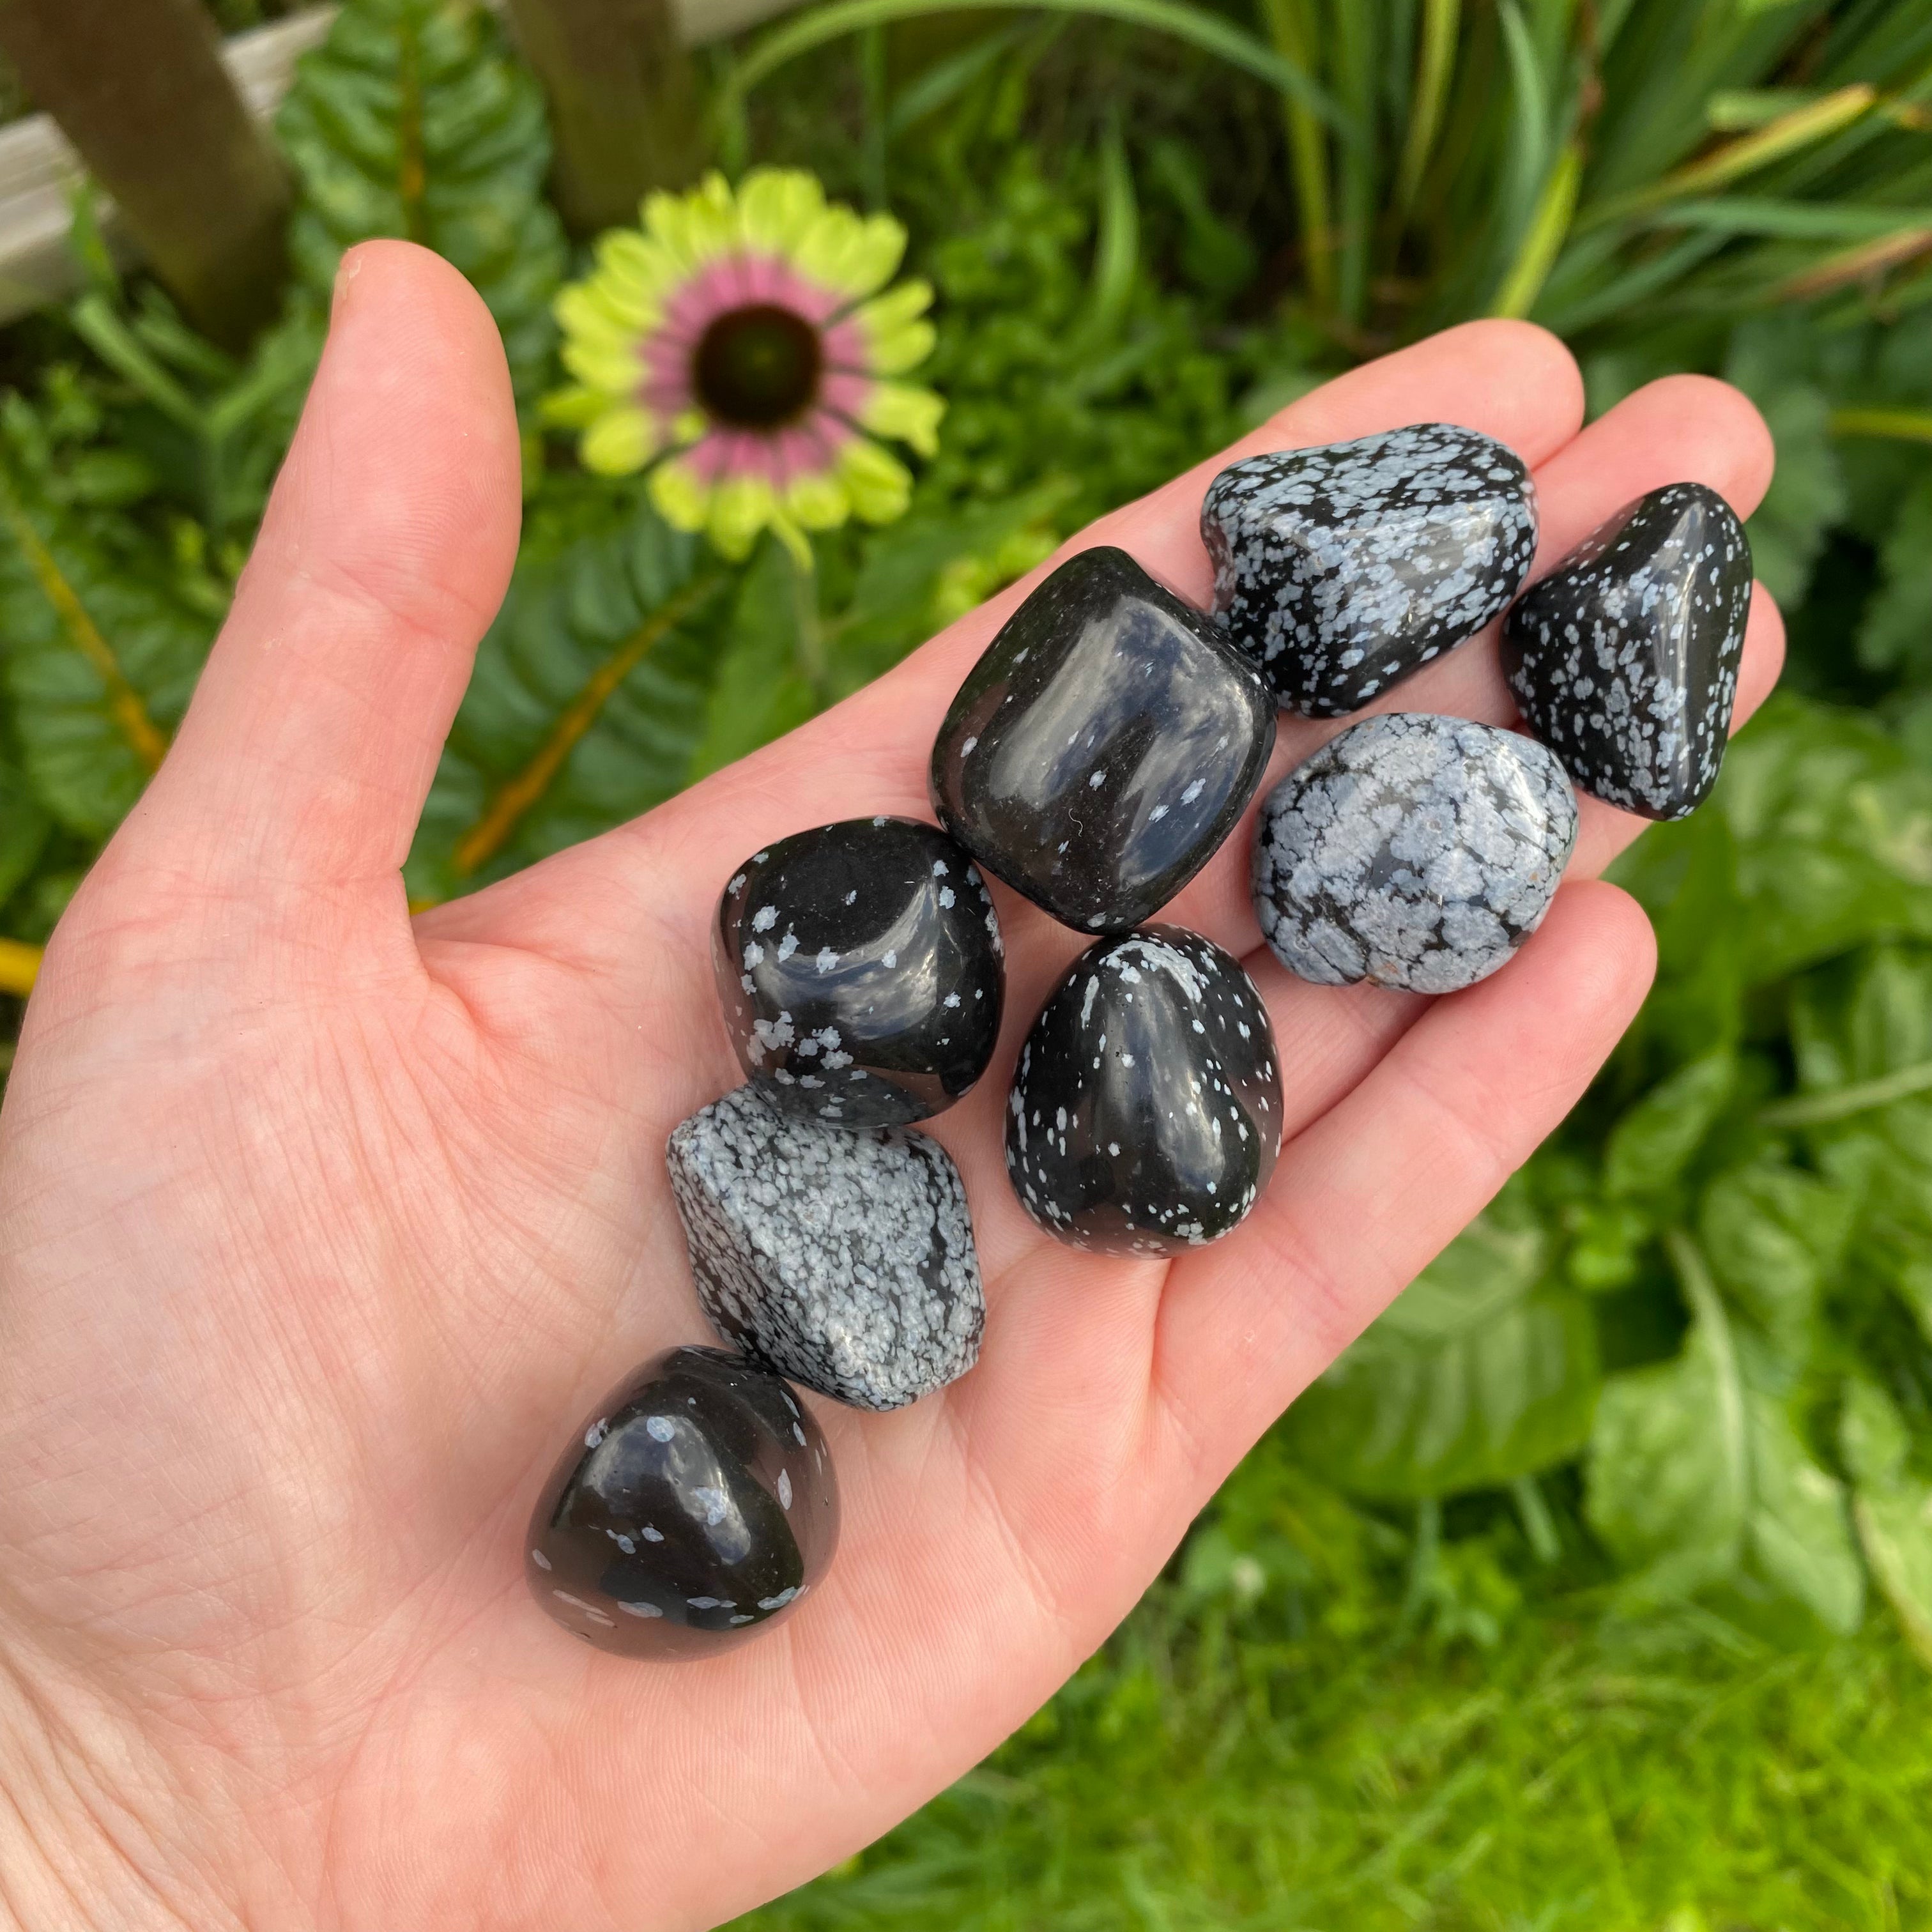 Snowflake Obsidian Tumblestone - ‘A’ grade